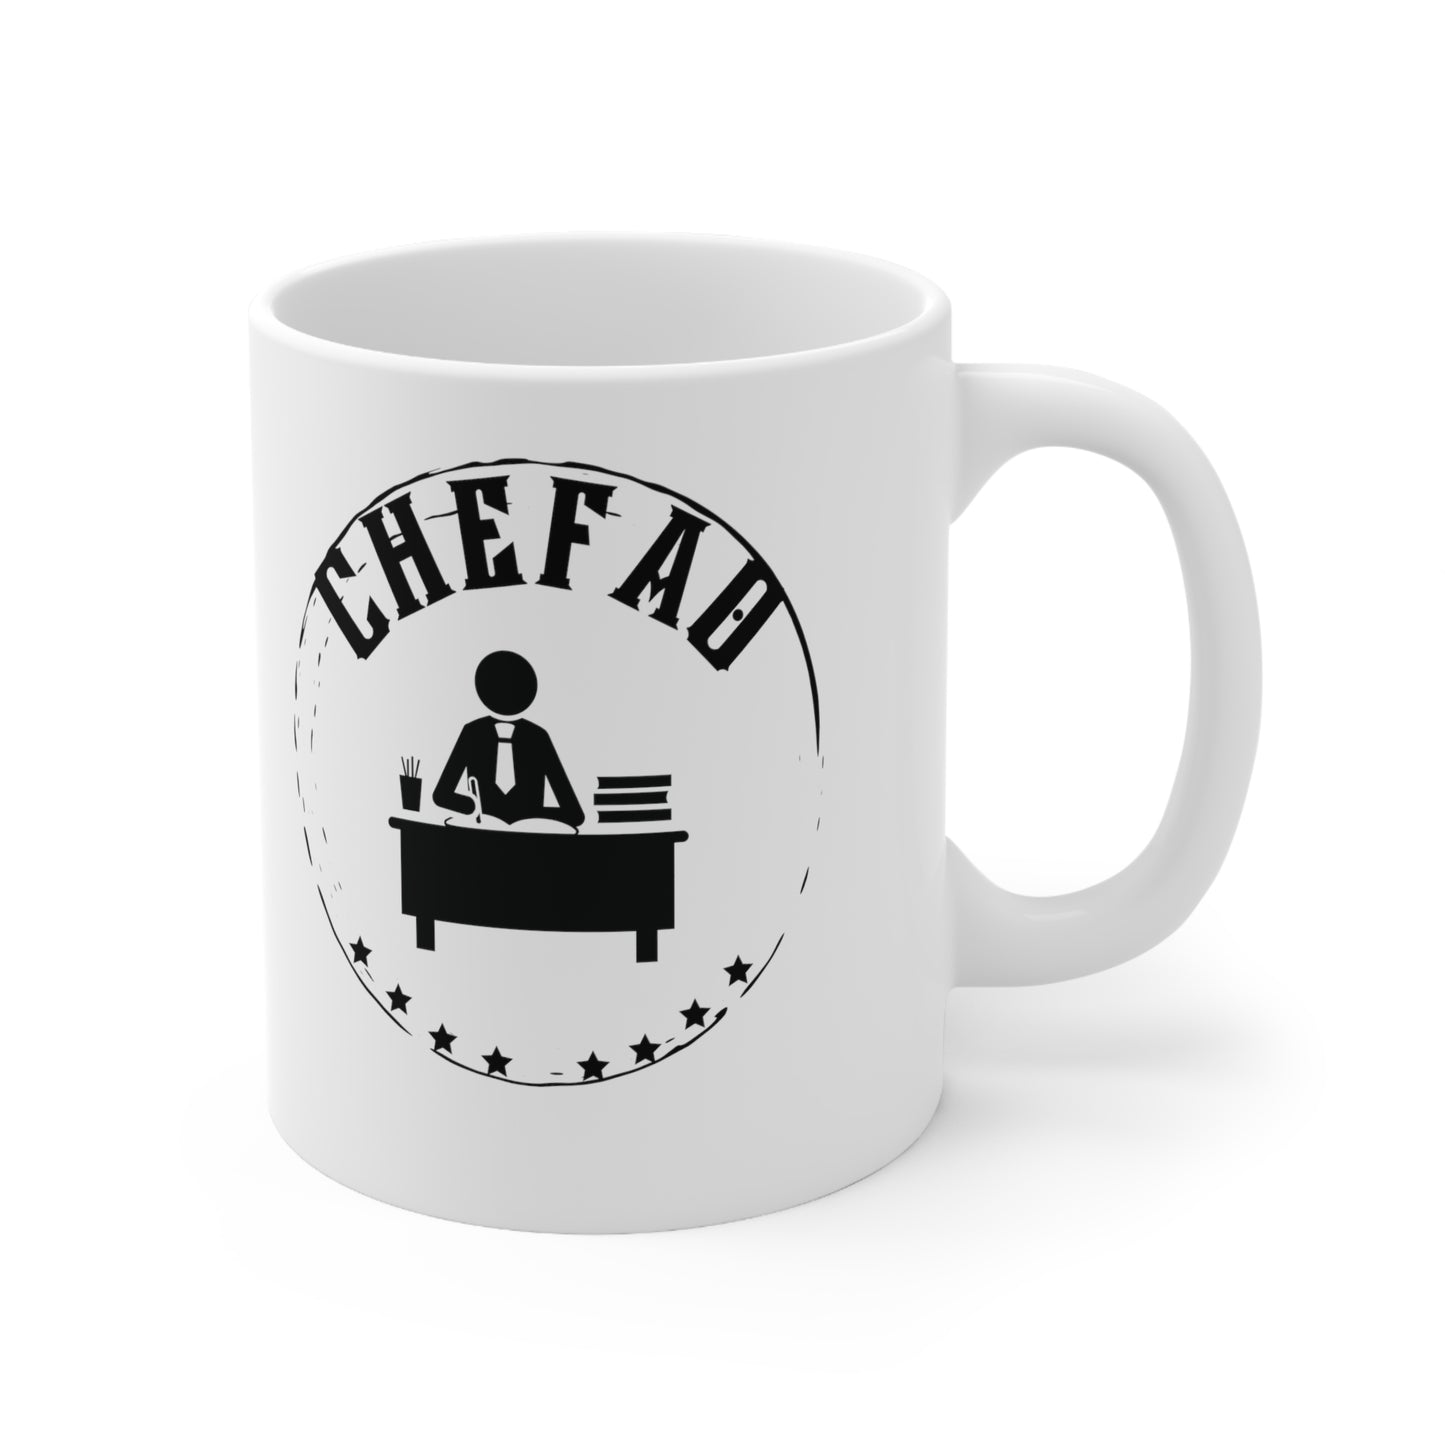 Chefao Teacher V, White Coffee Mug, 11oz